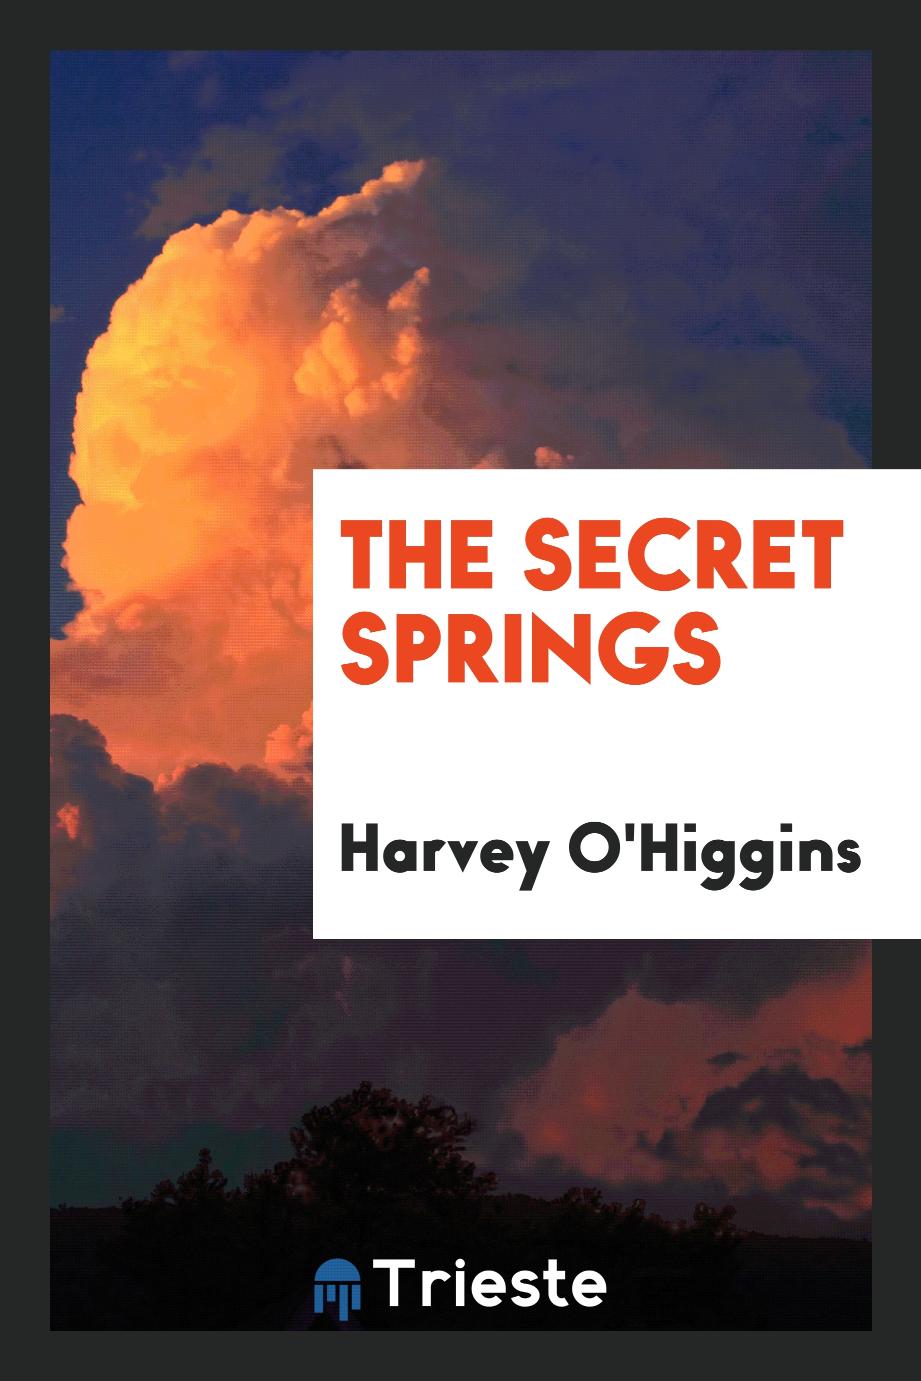 The secret springs